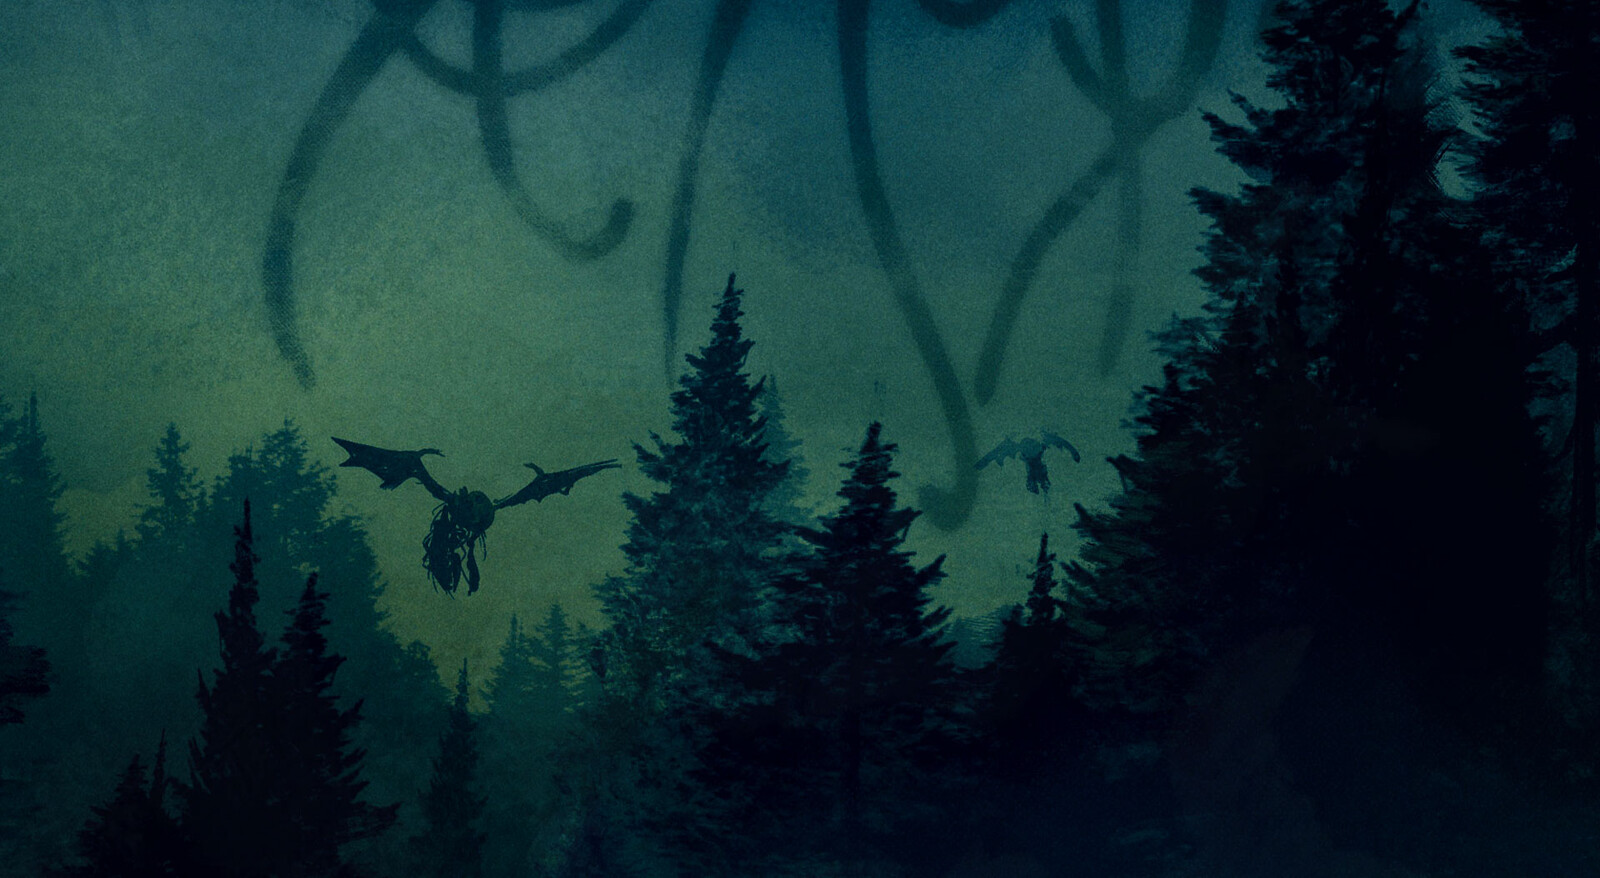 Arkham Dreams - Nightmare's Woods
/detail